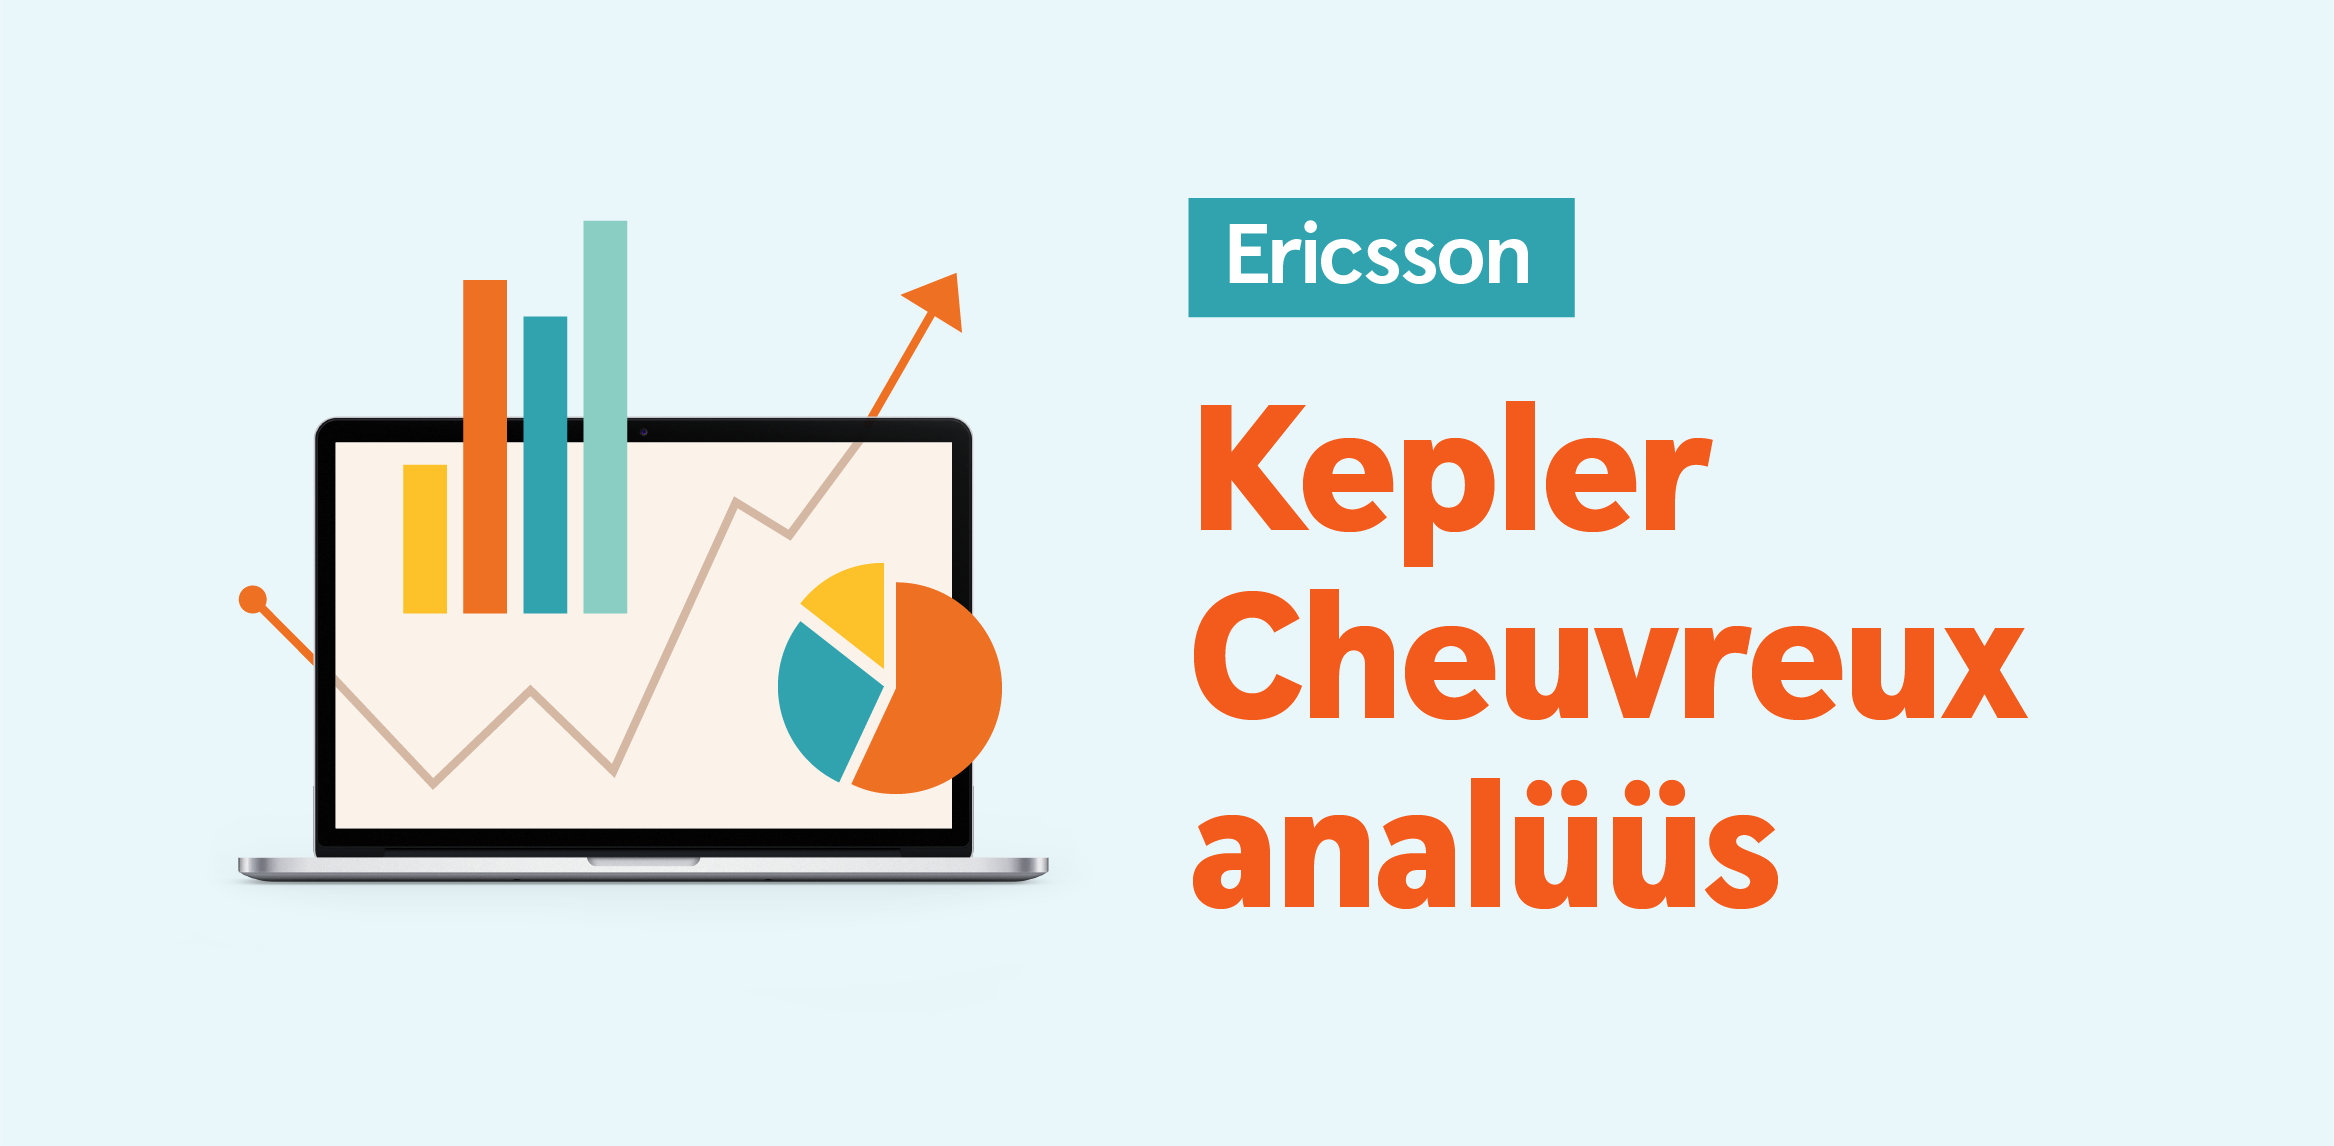 Kepler Cheuvrex tõstis Ericssoni aktsia hinnasihti